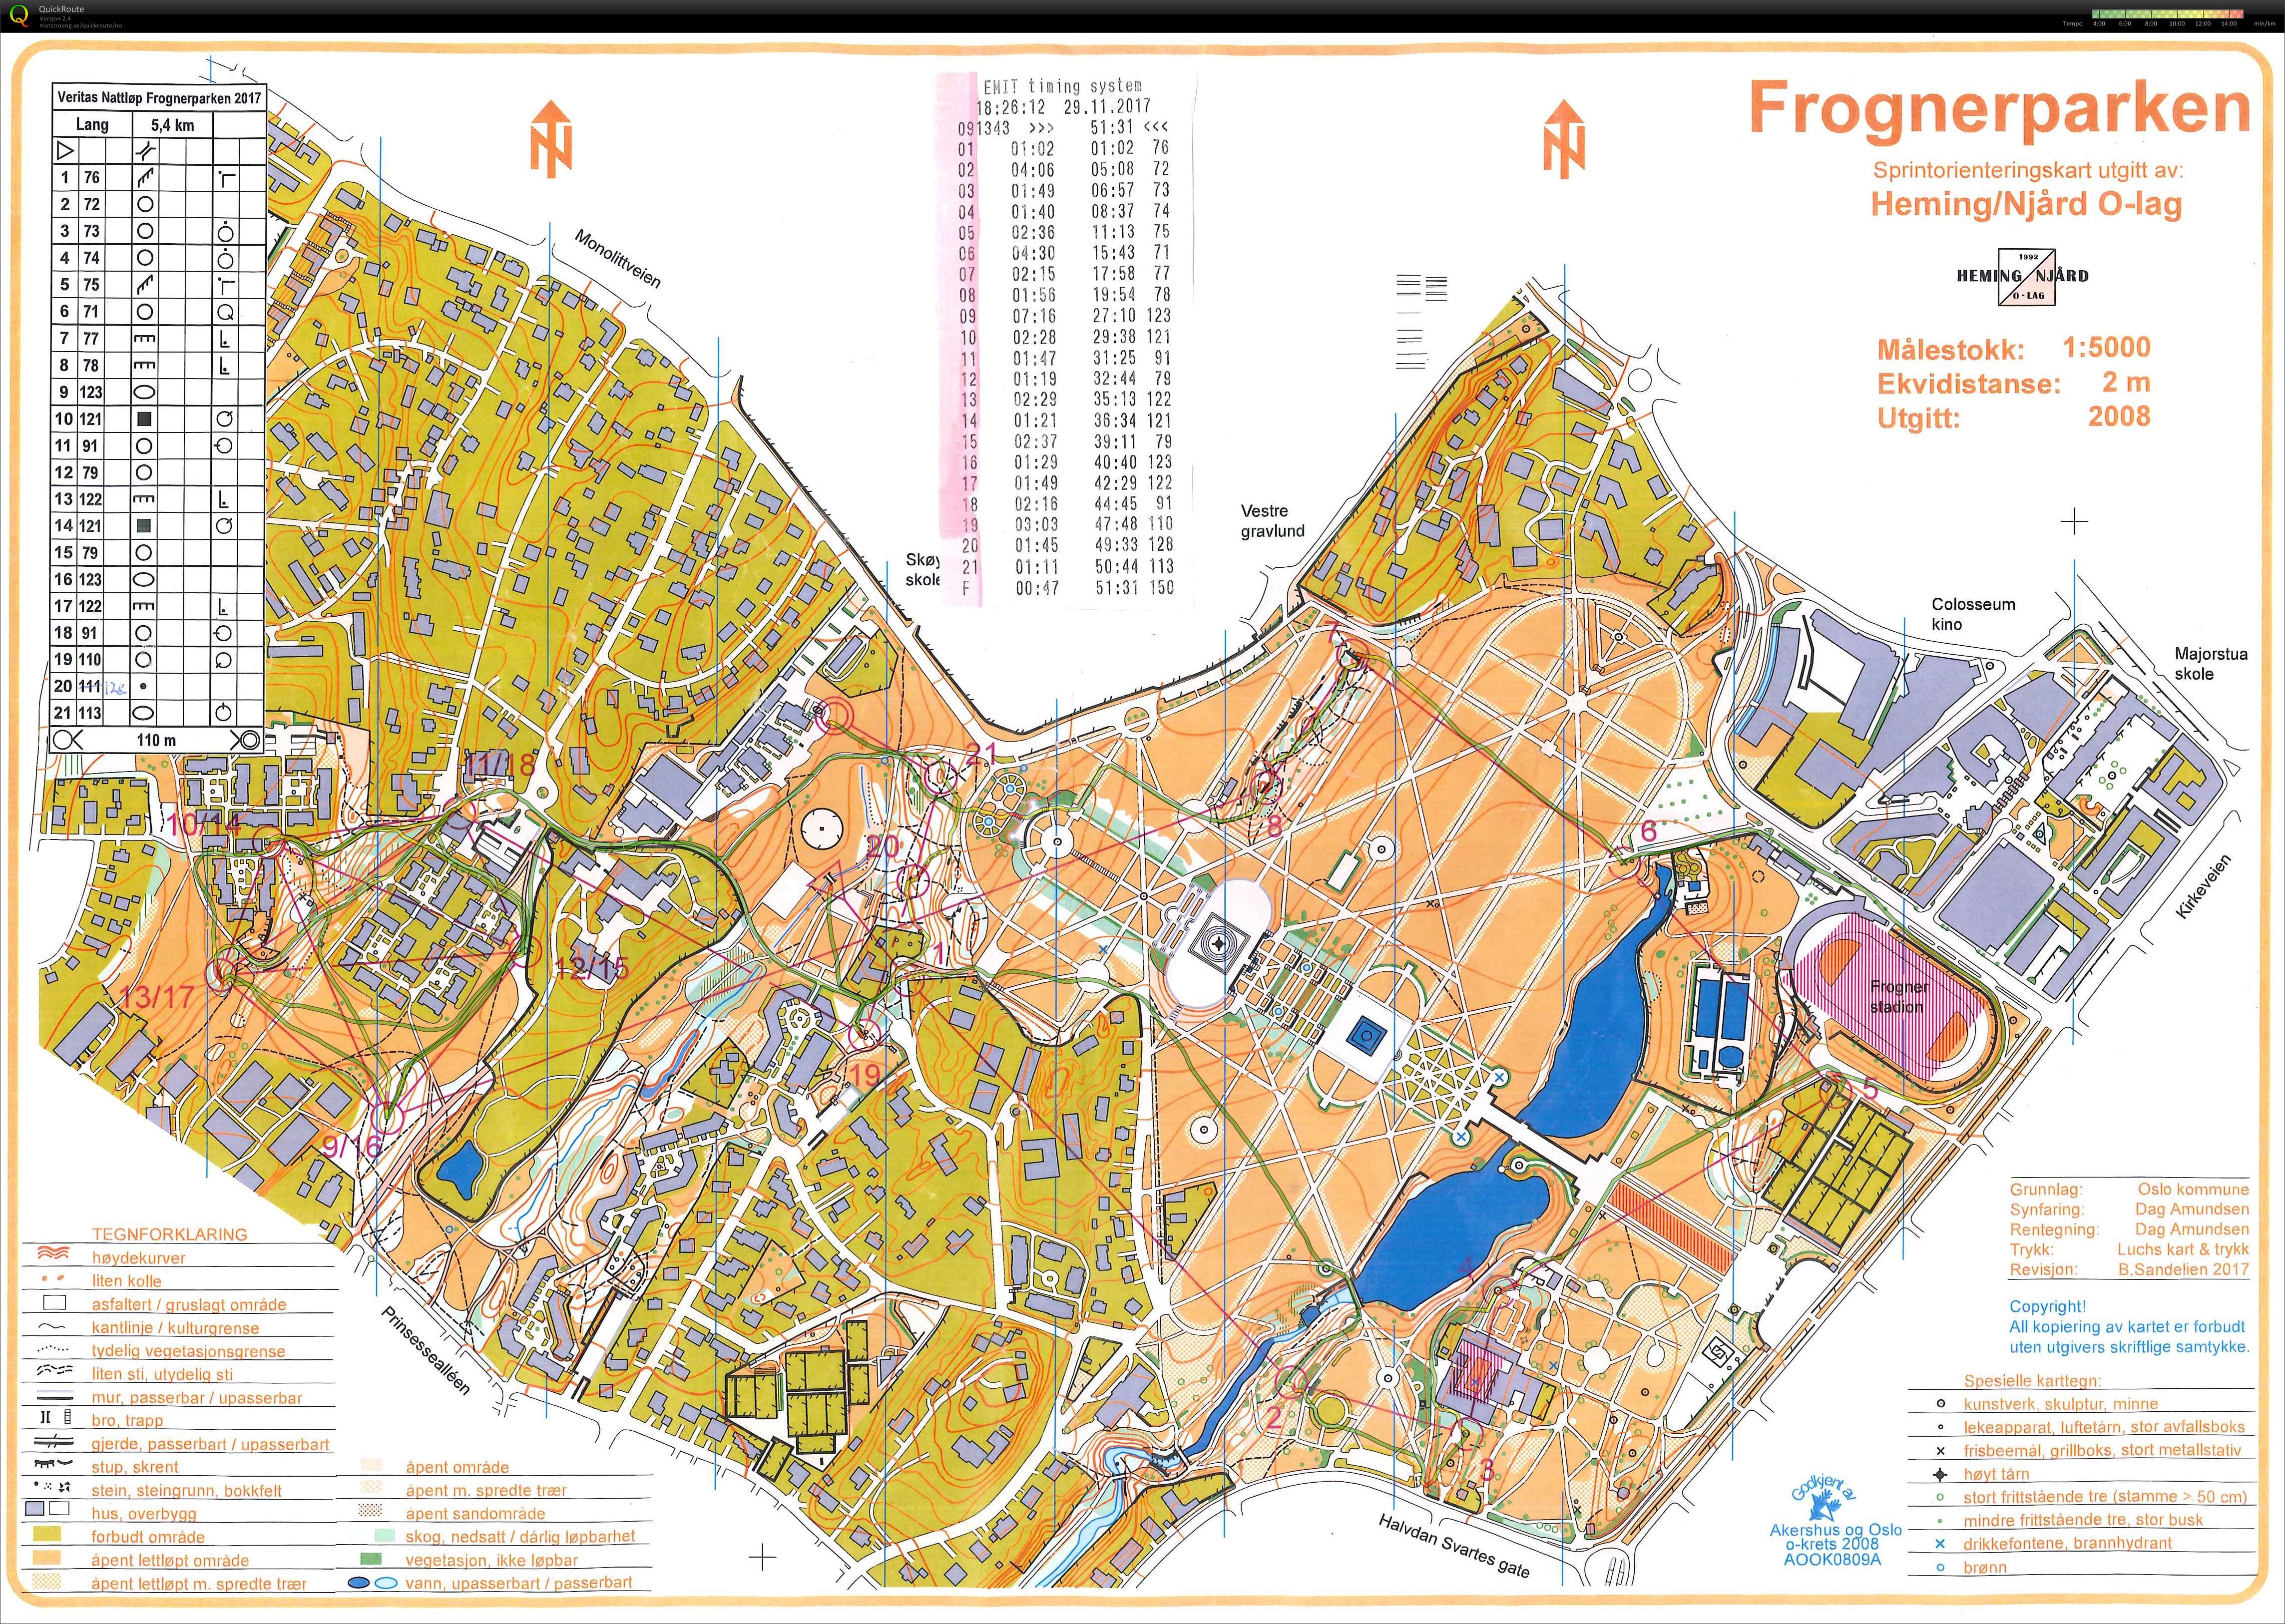 VBIL Frognerparken 171129 Lang 5,4km (2017-11-28)